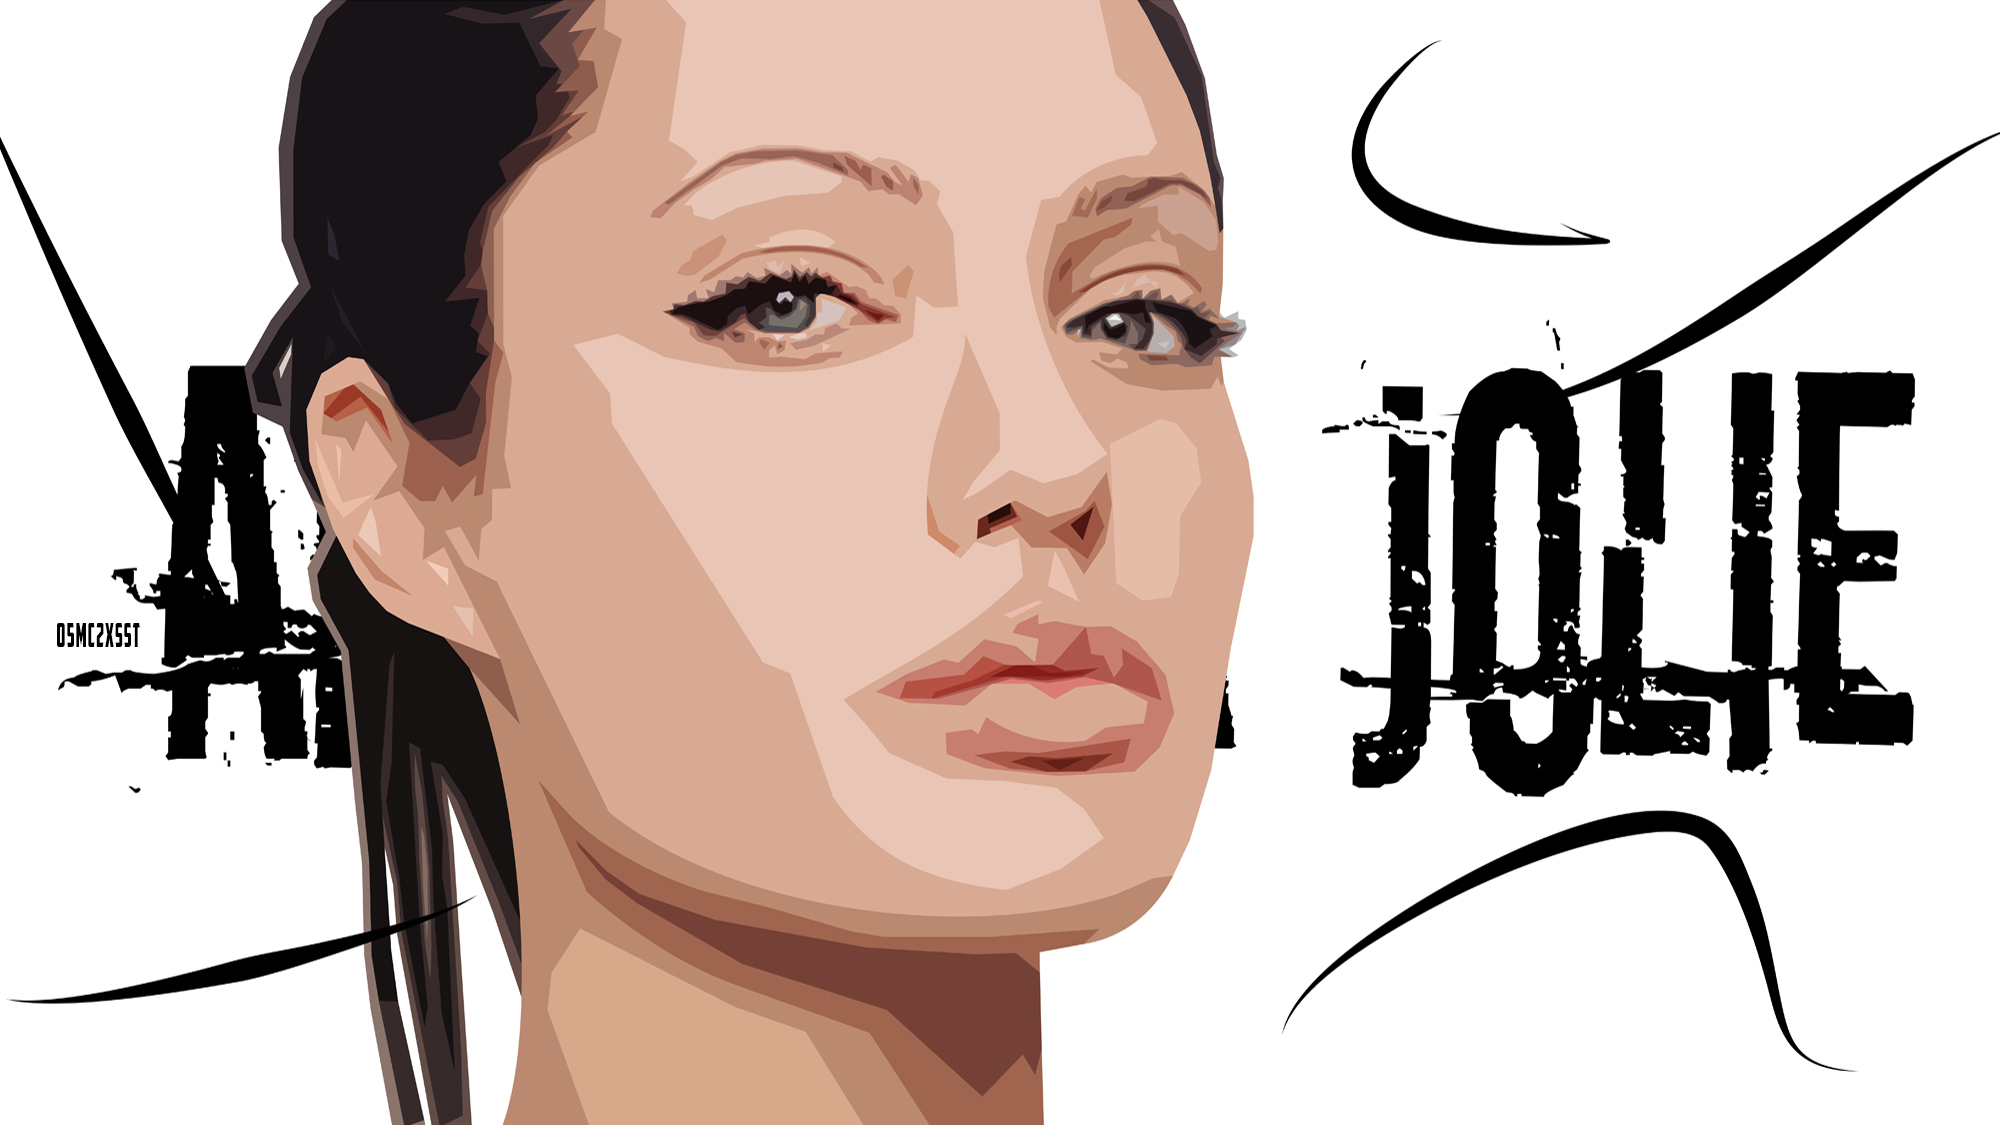 Скачать обои бесплатно Портрет, Знаменитости, Анджелина Джоли, Актриса картинка на рабочий стол ПК